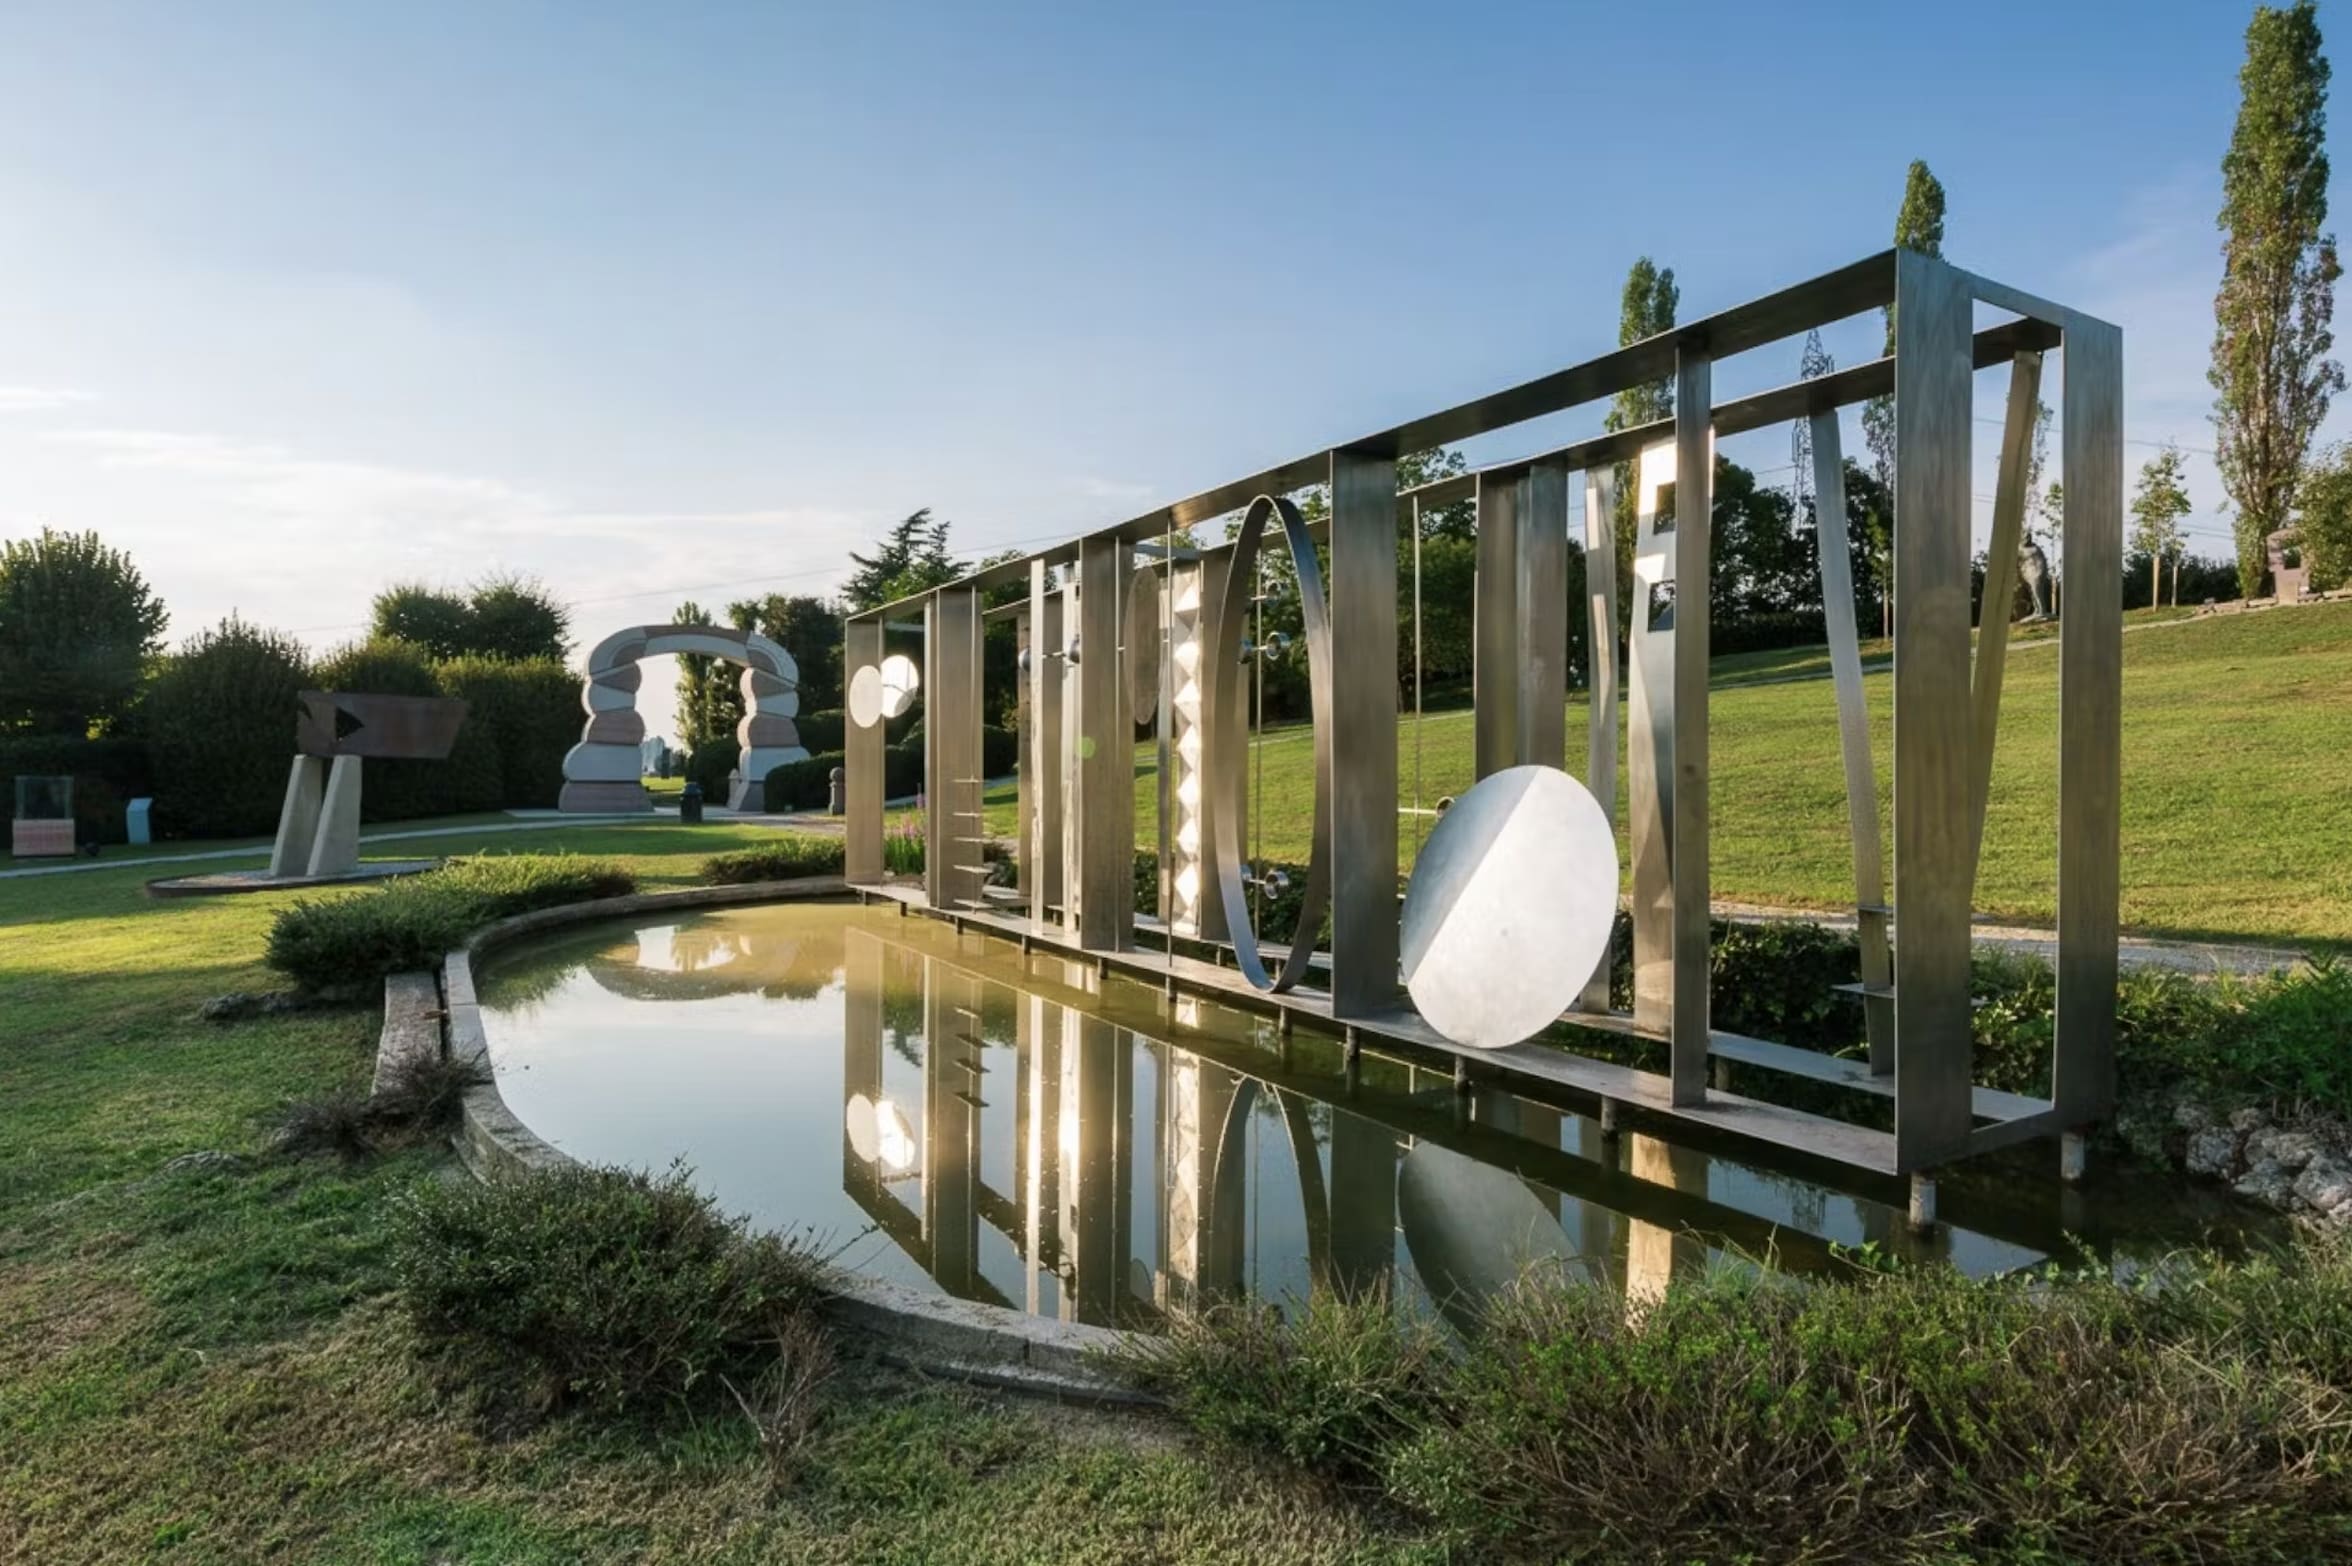 Parchi Arte Italia, dove la natura incontra la scultura. Installazioni e opere di artisti internazionali in giardini e musei a cielo aperto